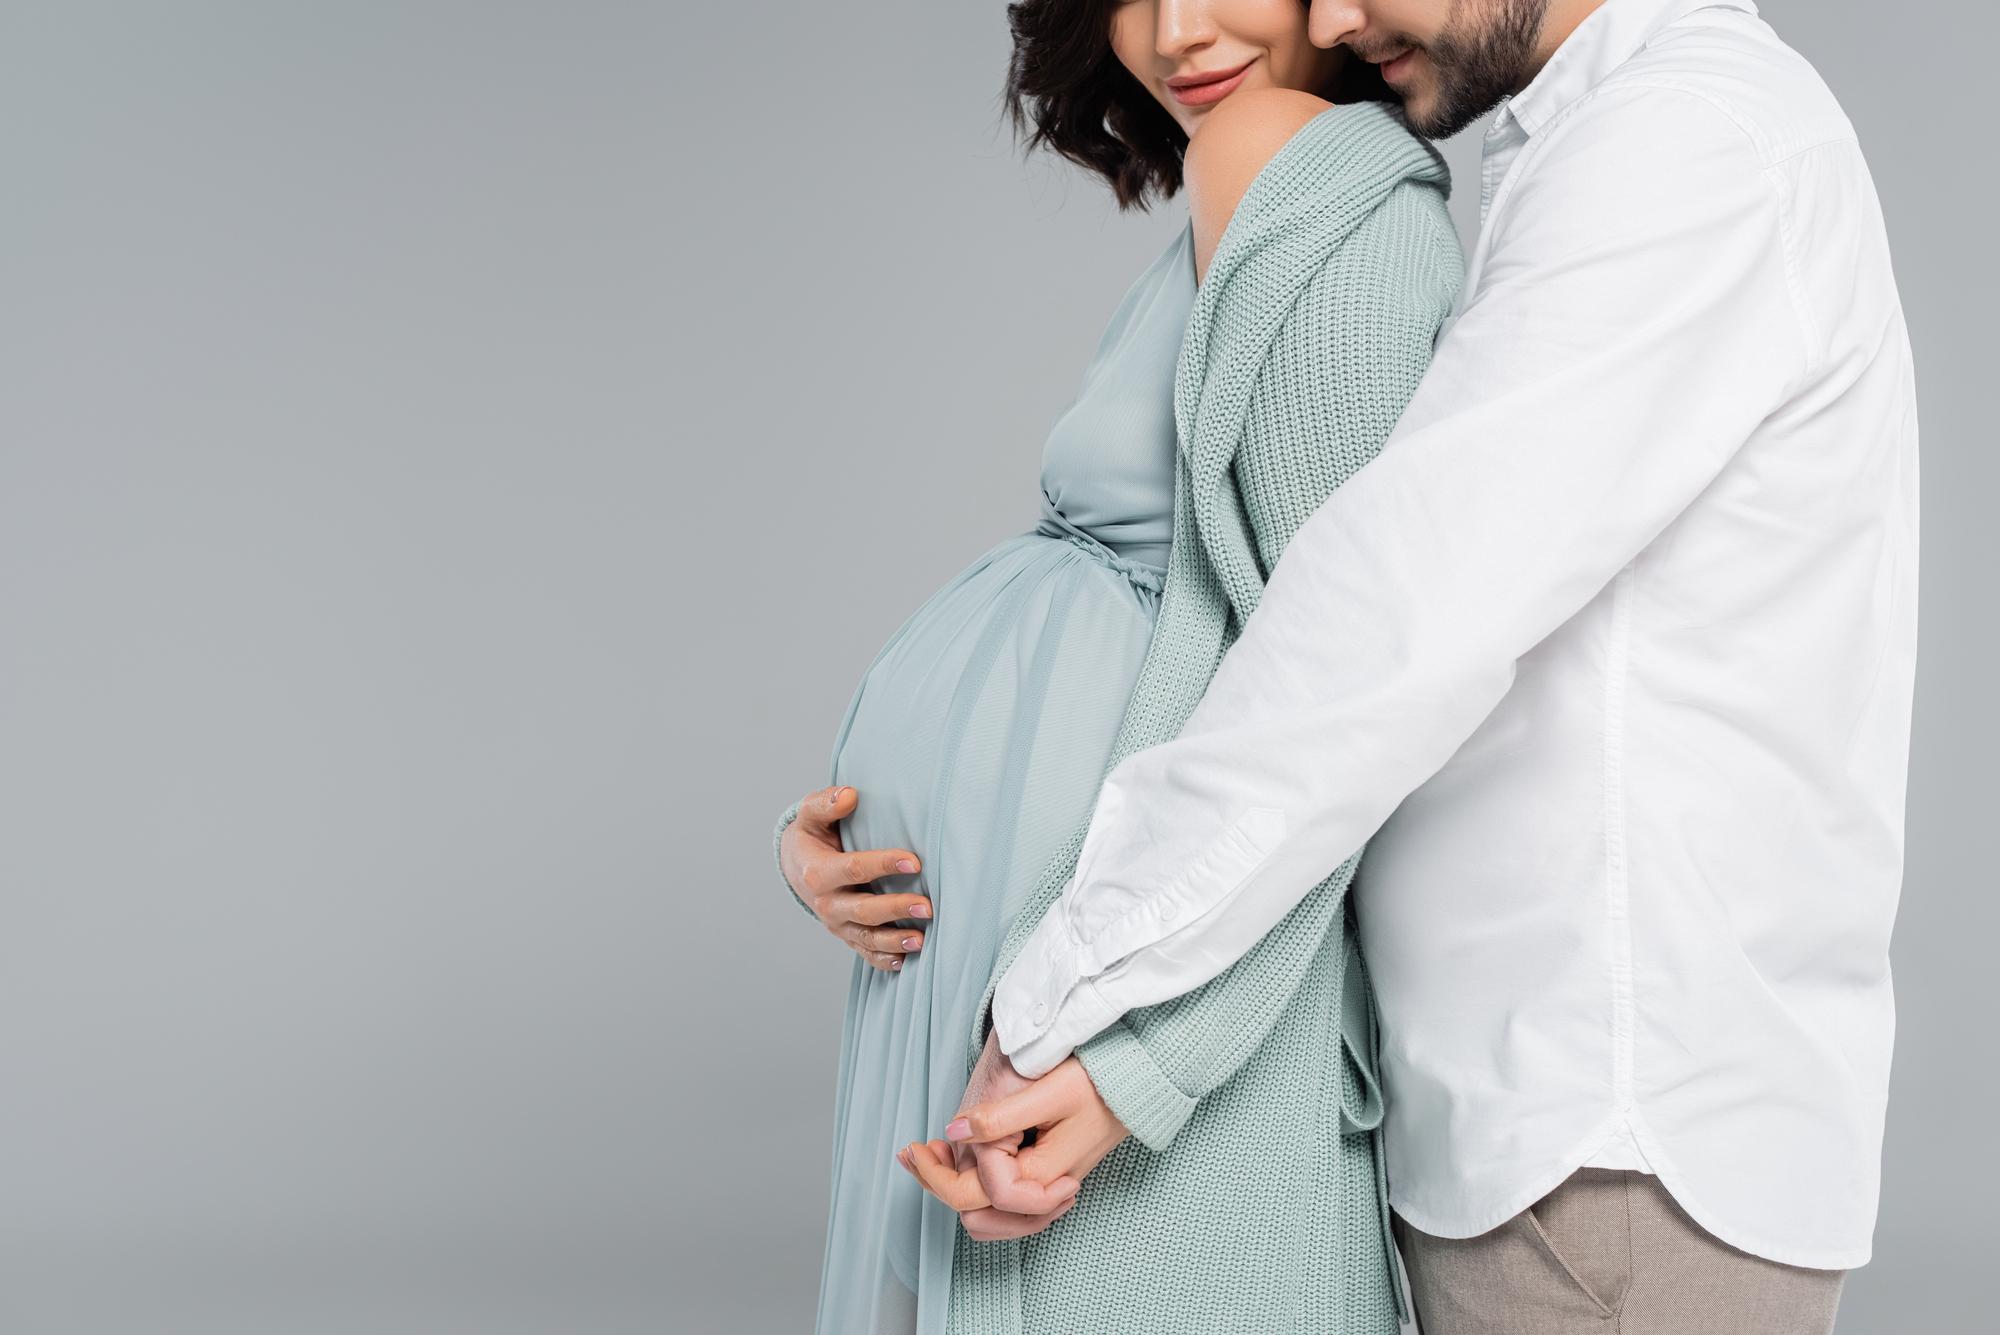 9 种孕妇产前复合维生素推荐